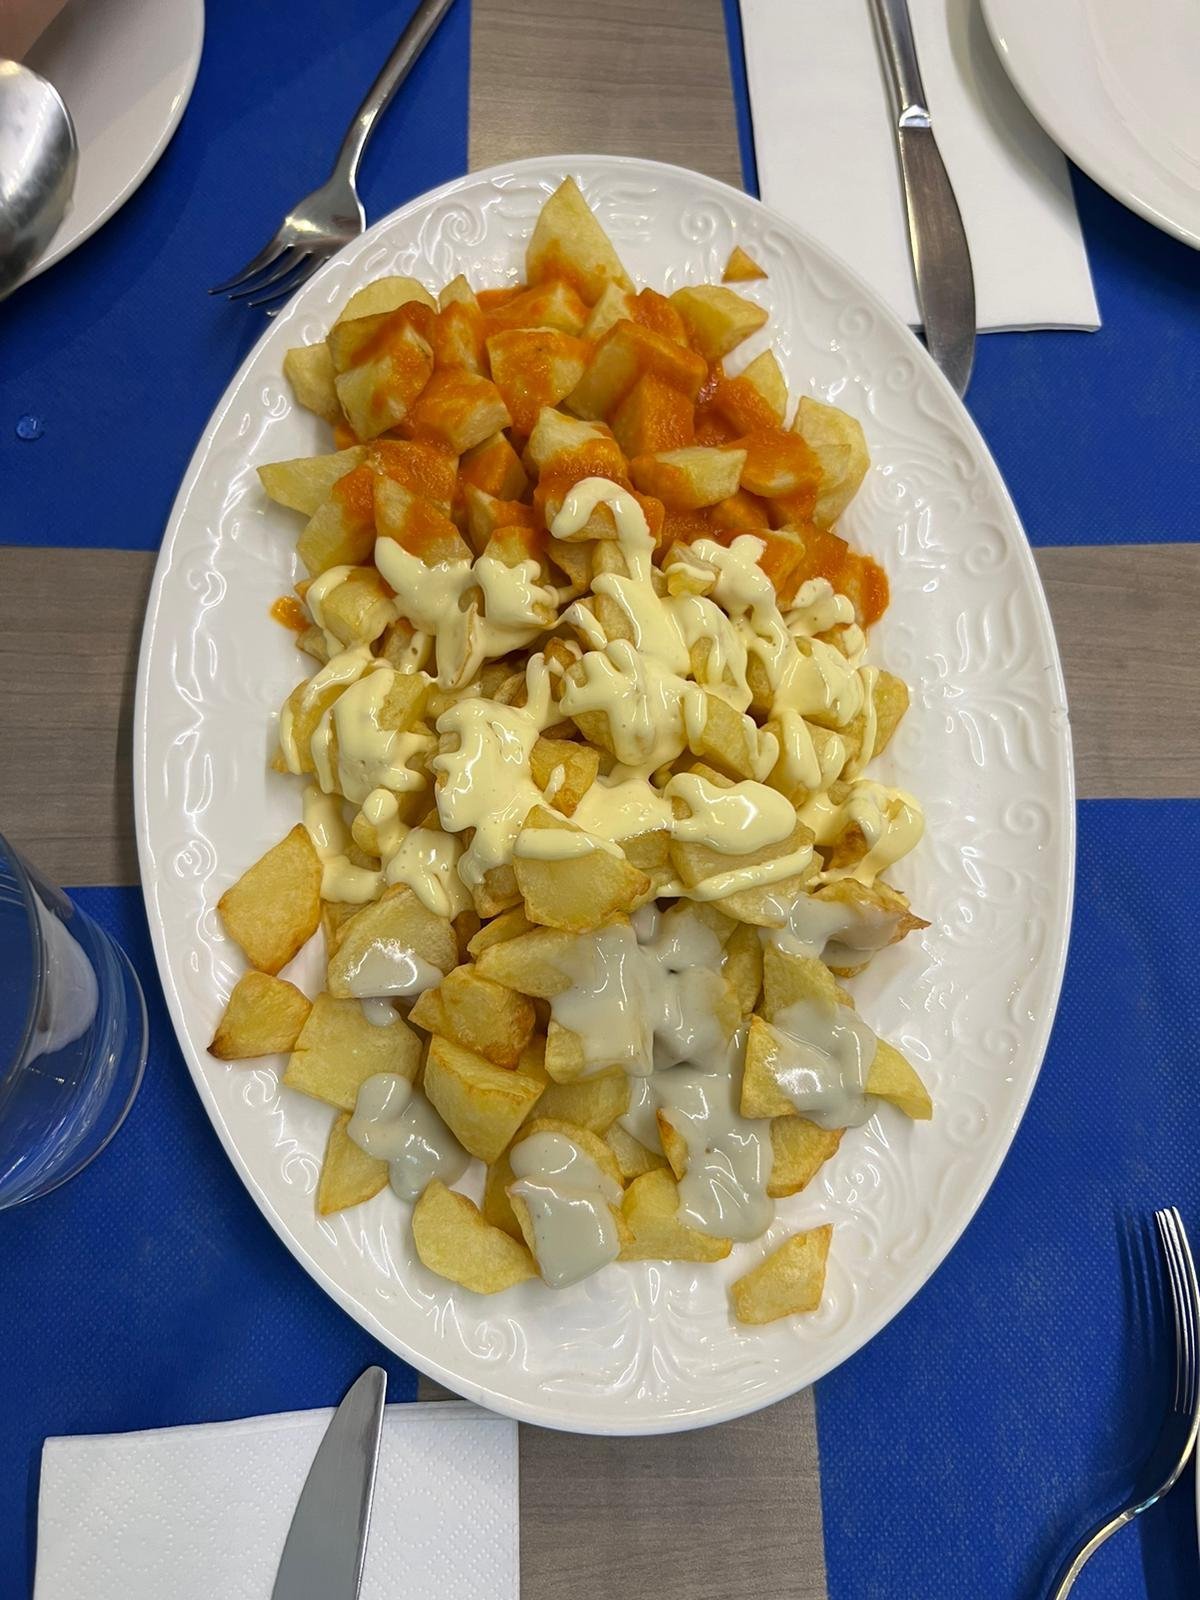 Patatas bravas aneb španělská klasika